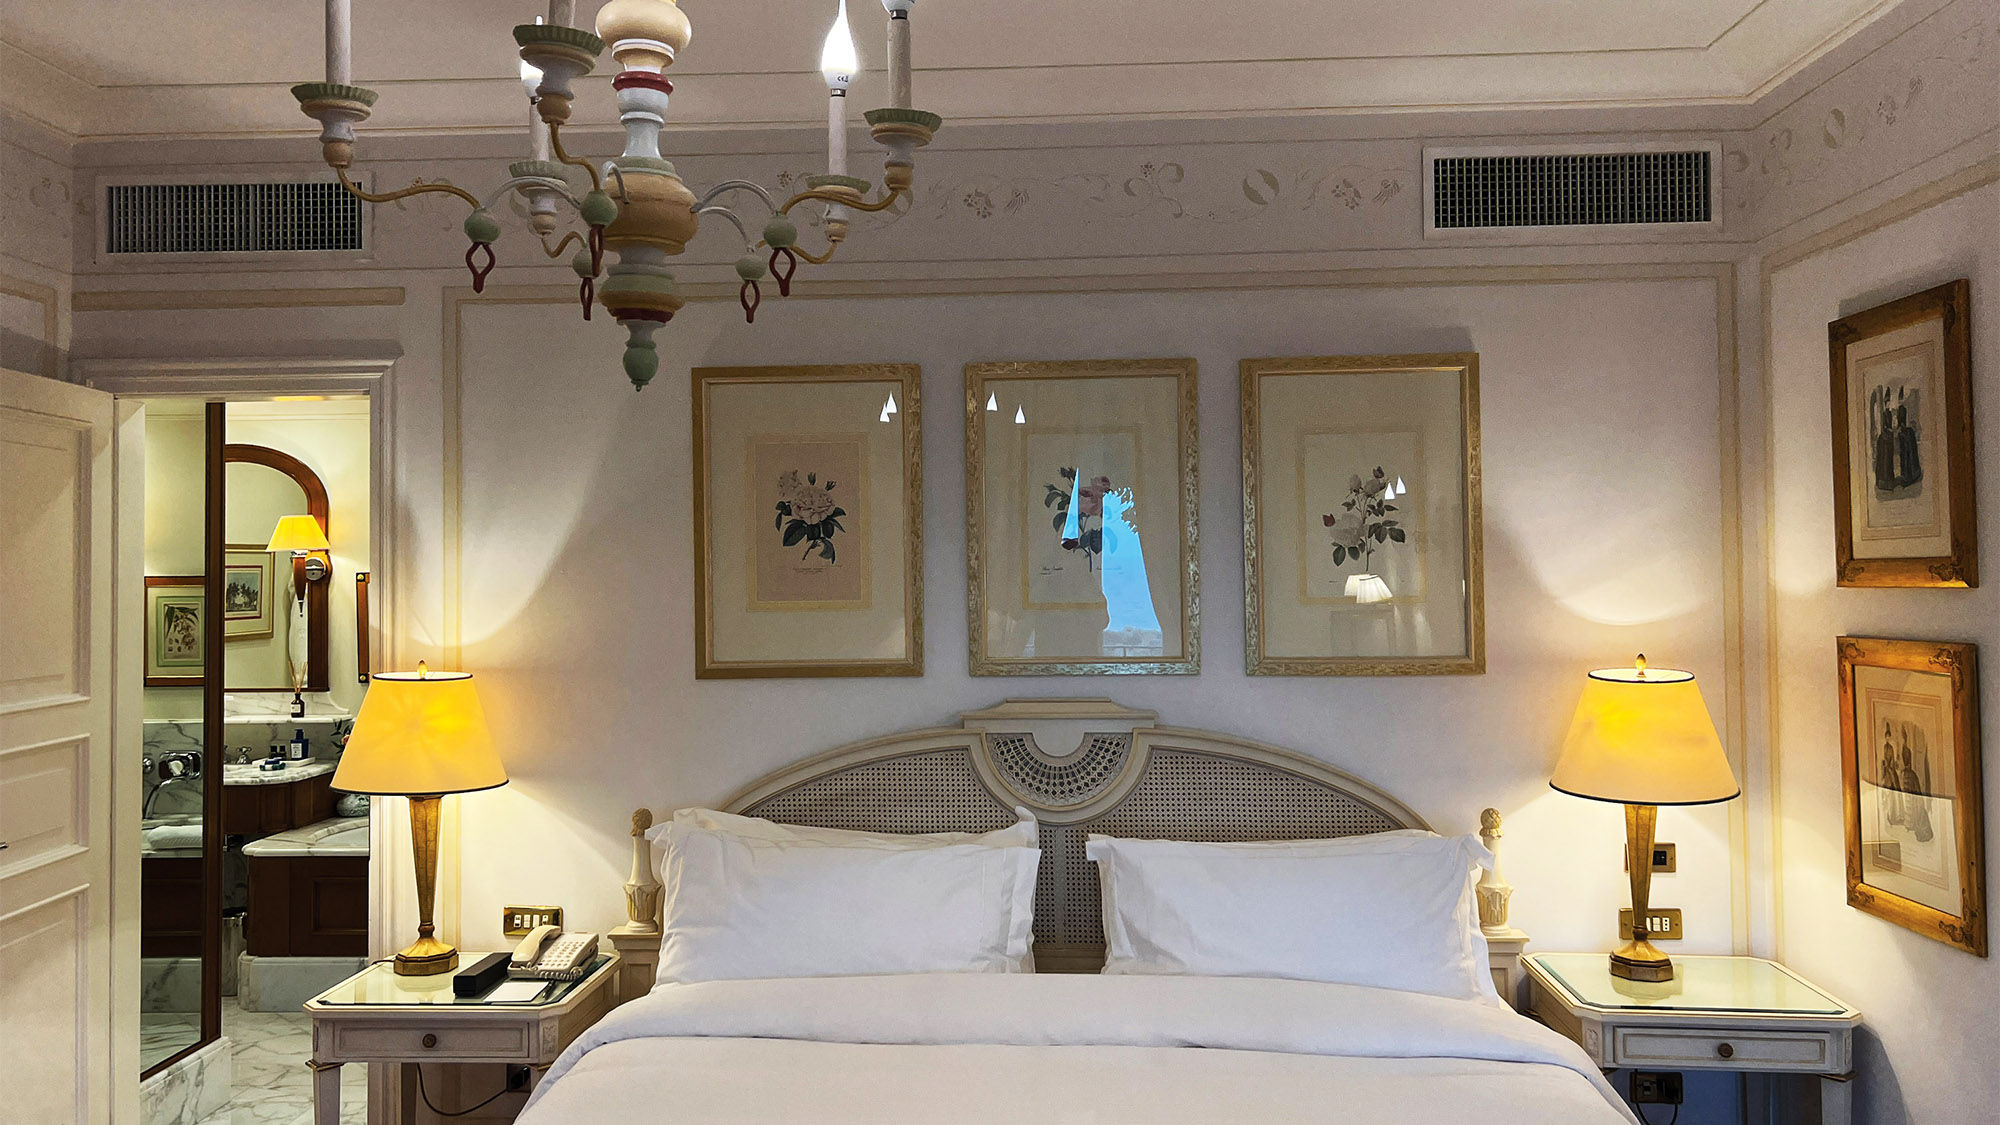 A suite at the Splendido hotel in Portofino.